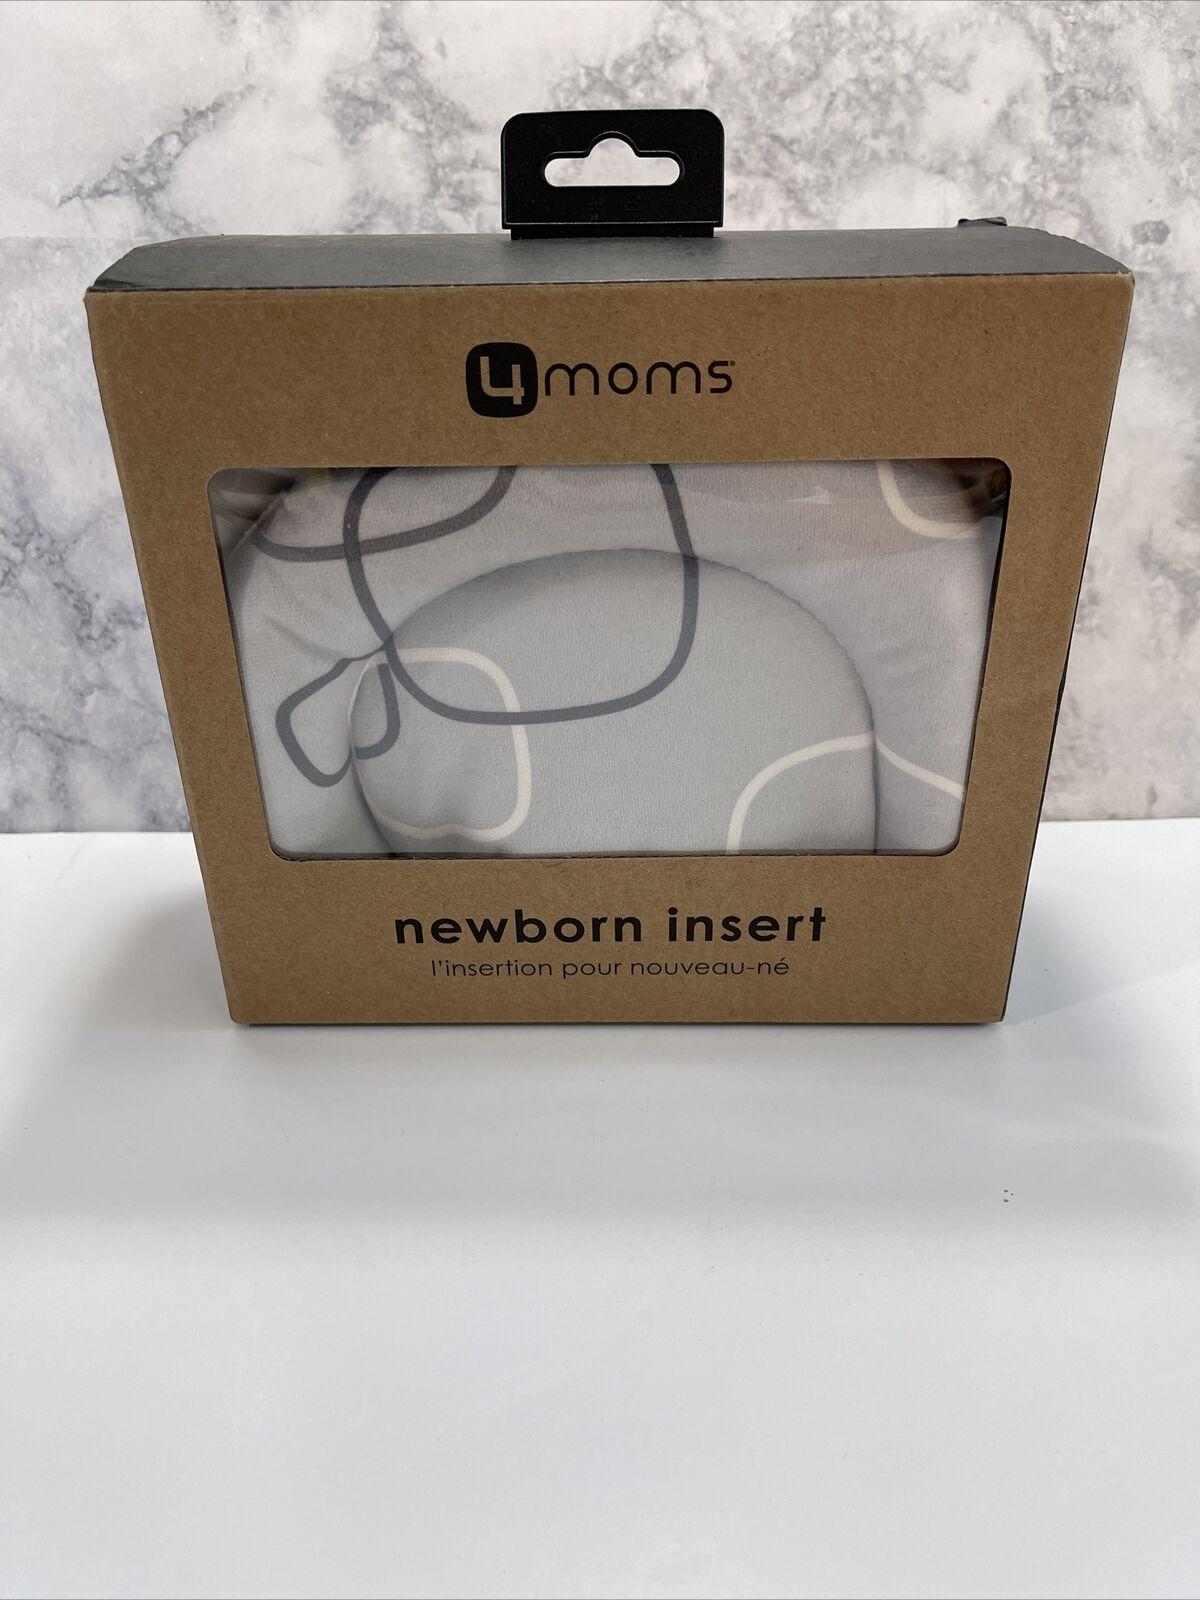 4moms New Reversible And Machine Washable Newborn Insert – Soft, Plush Fabric